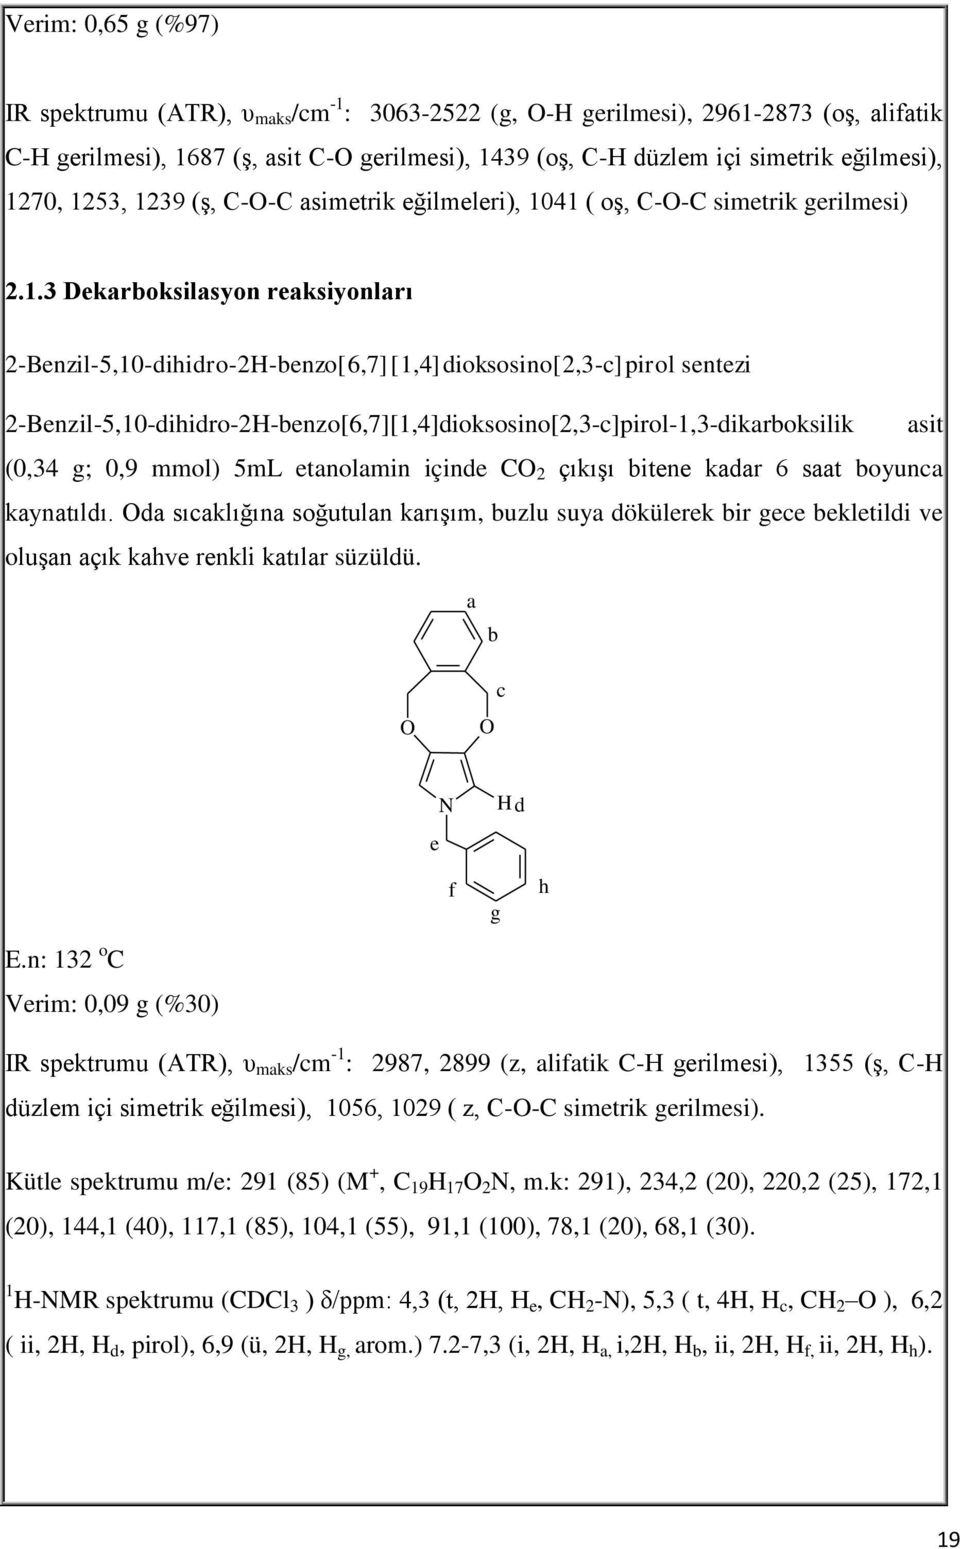 2-Benzil-5,10-dihidro-2H-benzo[6,7][1,4]dioksosino[2,3-c]pirol-1,3-dikarboksilik asit (0,34 g; 0,9 mmol) 5mL etanolamin içinde C 2 çıkışı bitene kadar 6 saat boyunca kaynatıldı.